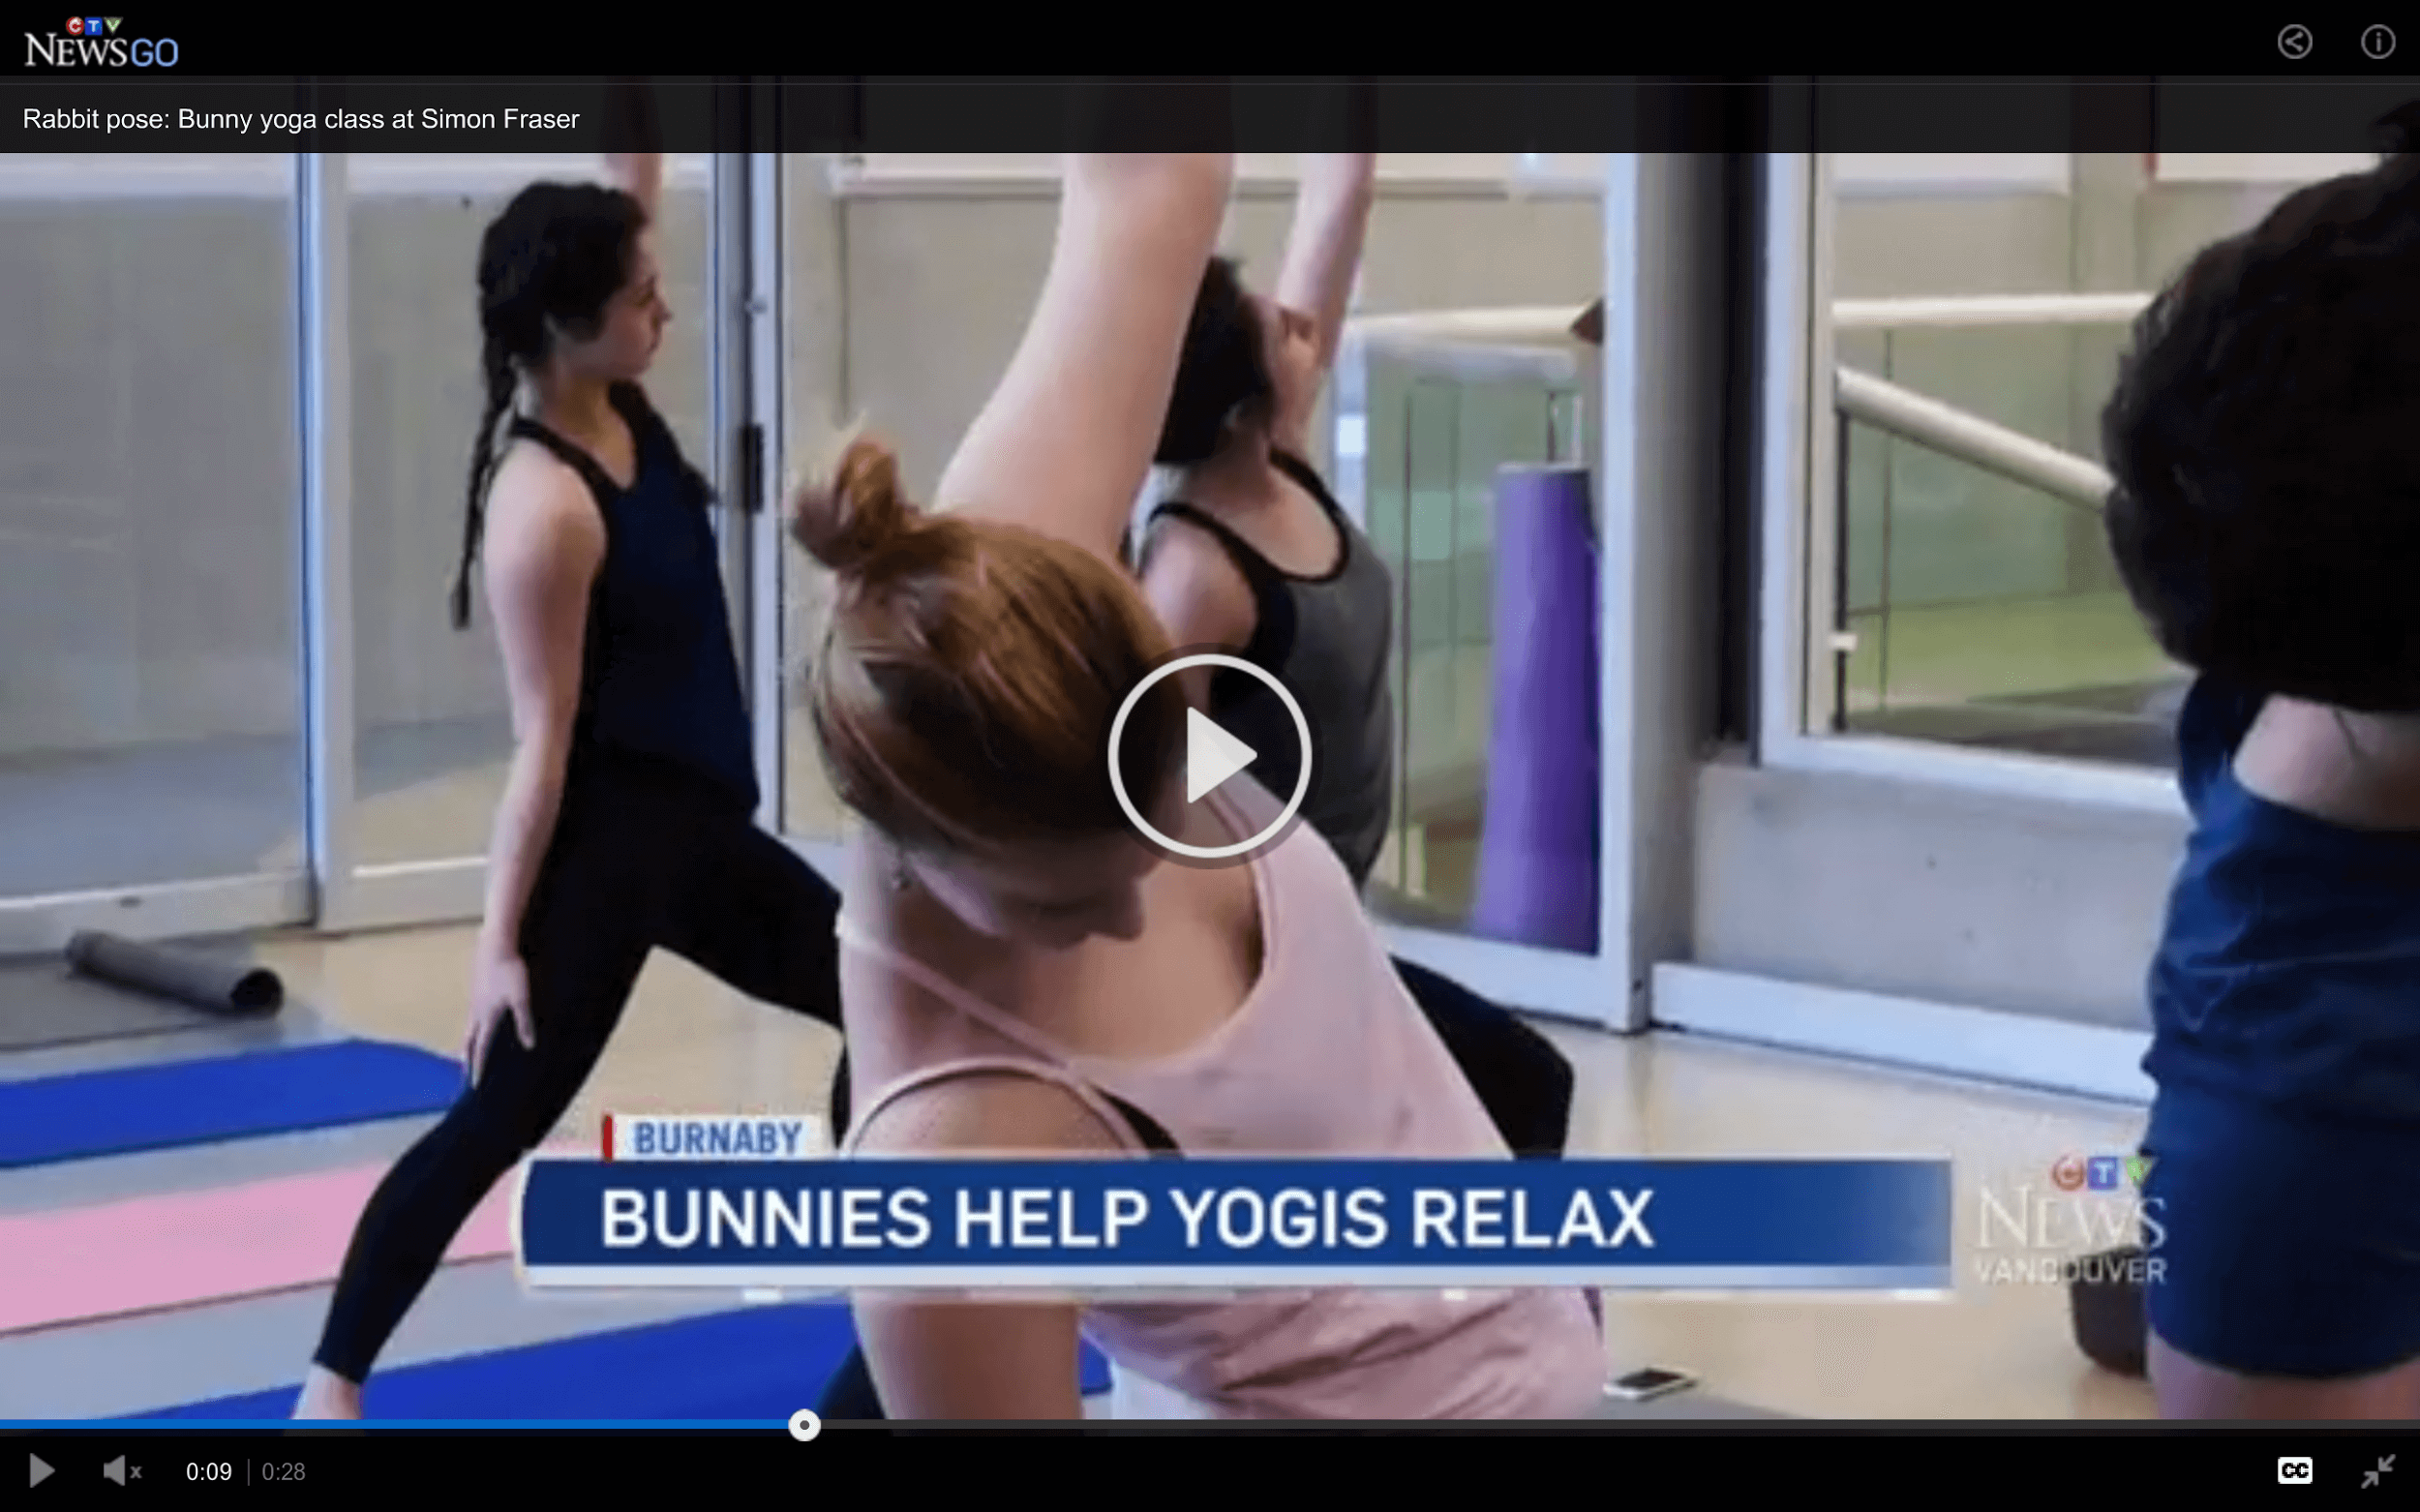 bunny-yoga news coverage